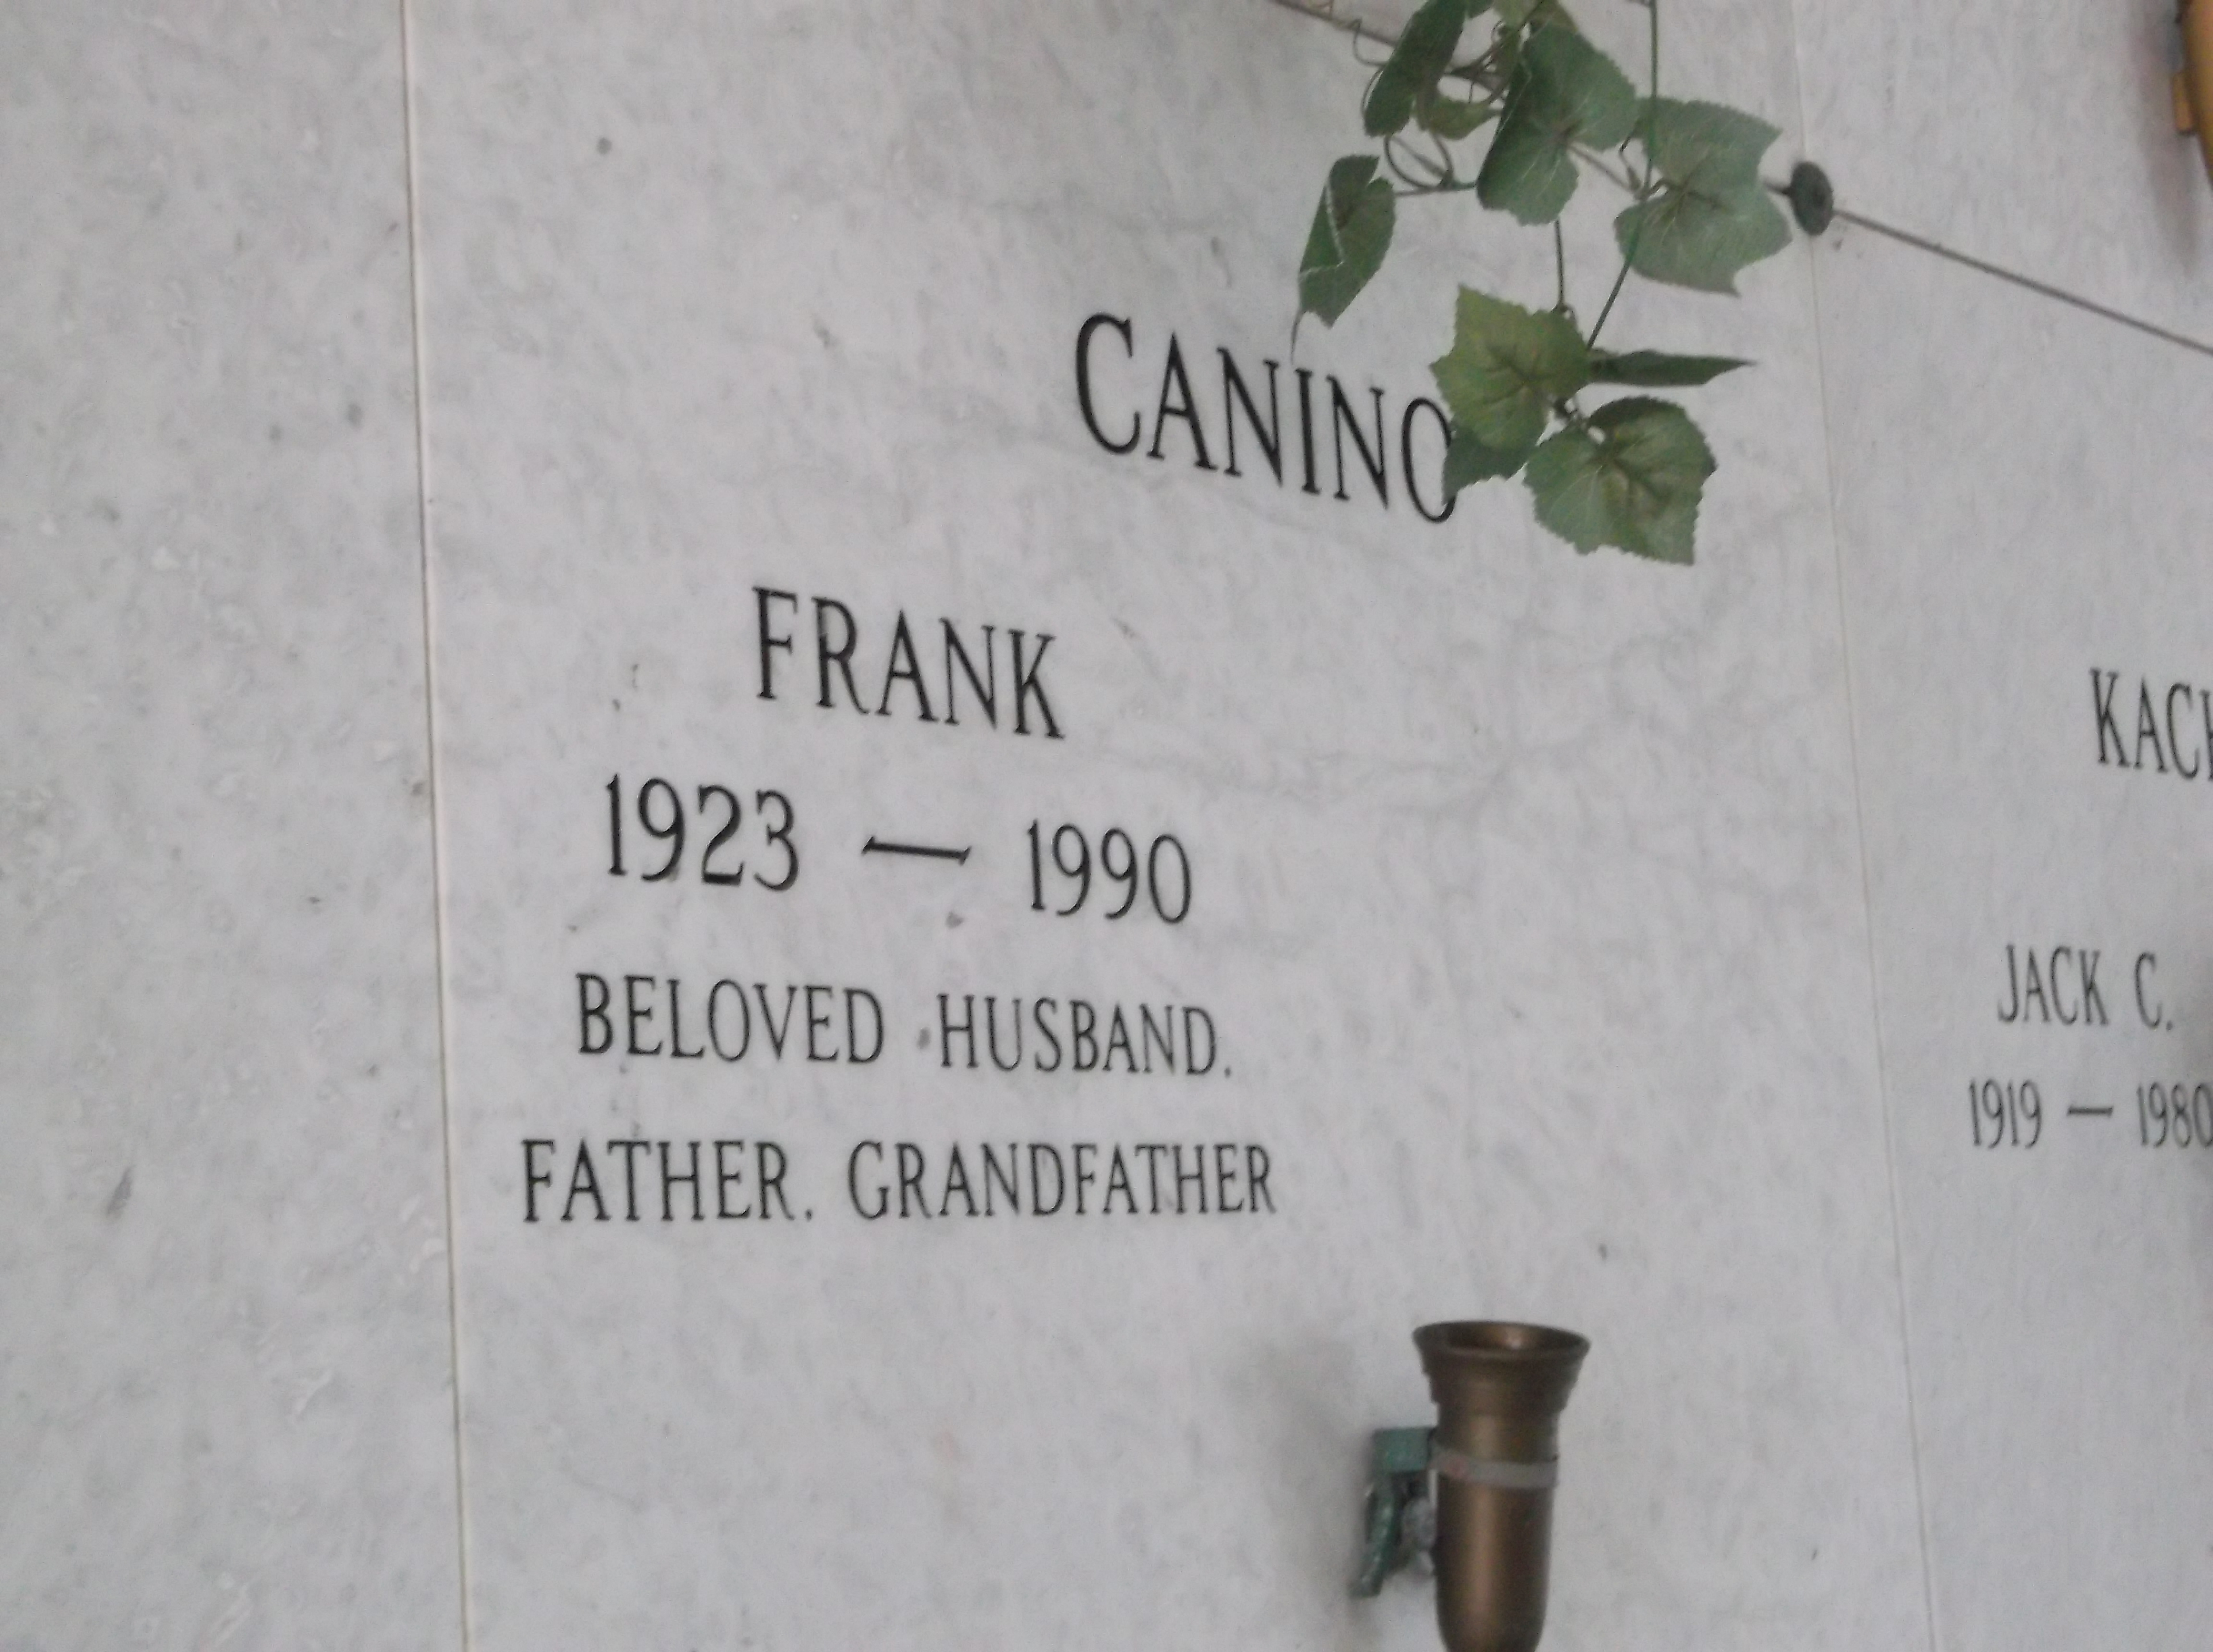 Frank Canino